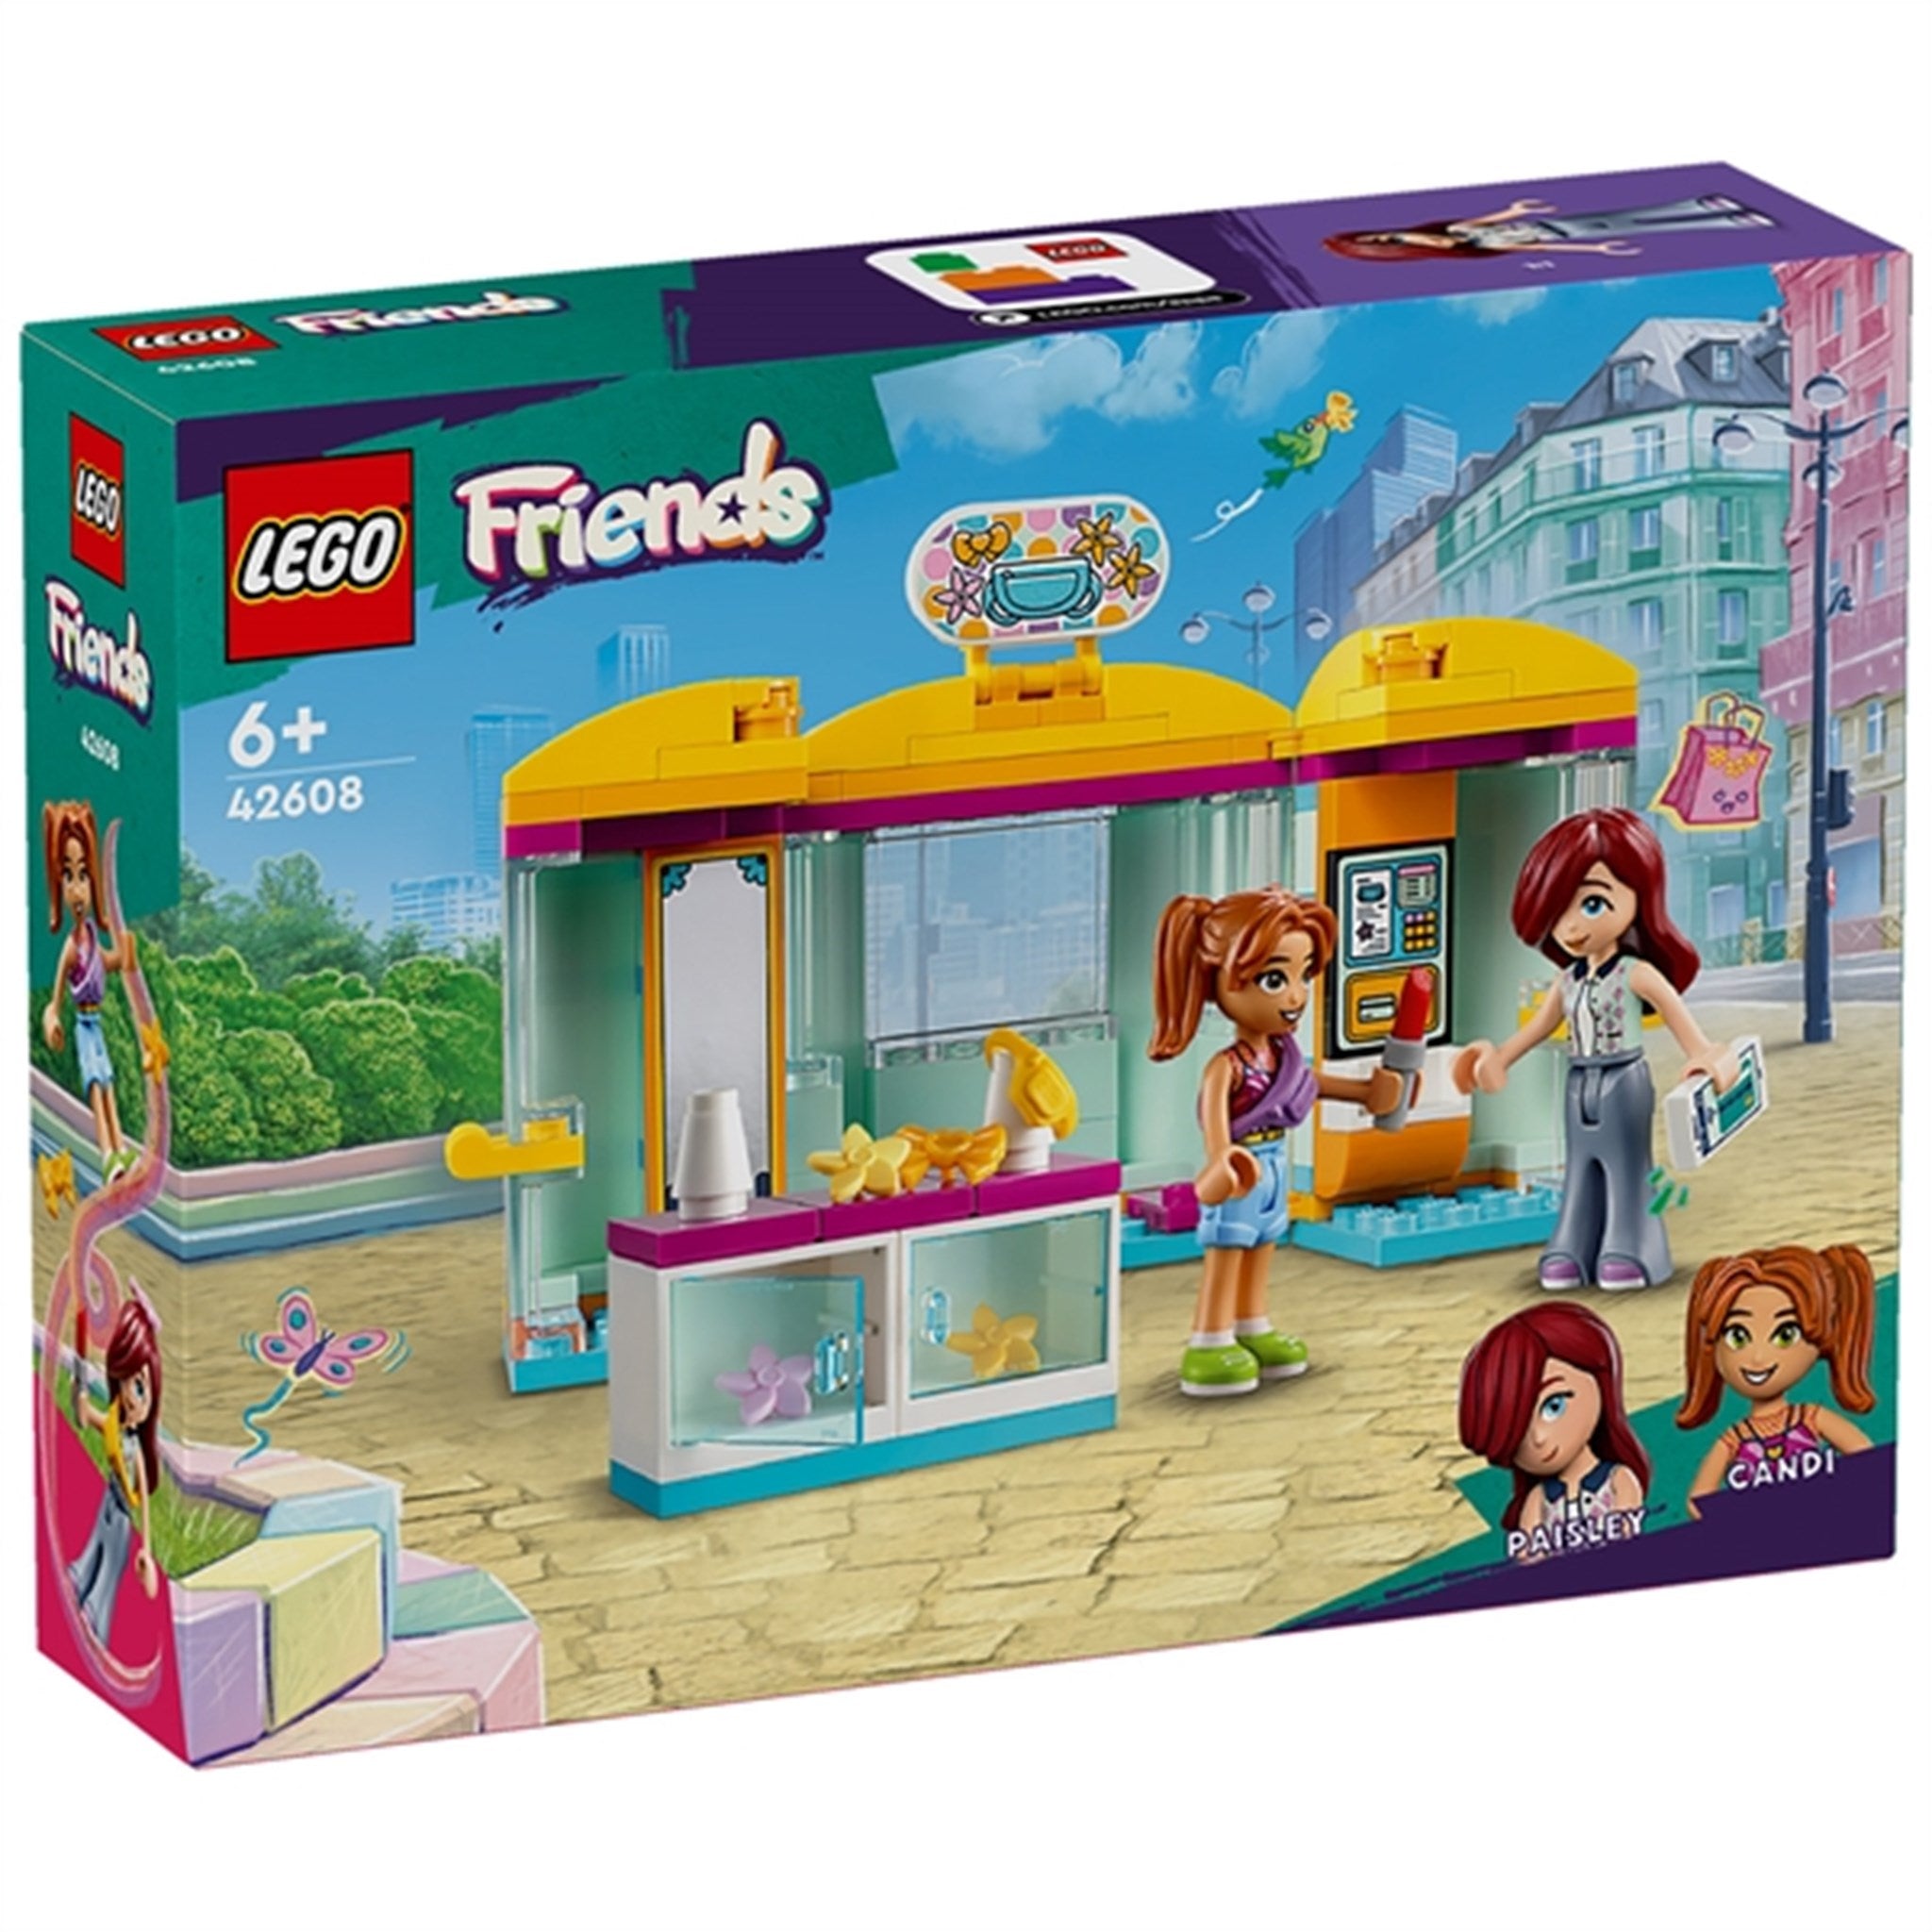 LEGO® Friends Liten Accessoarbutik